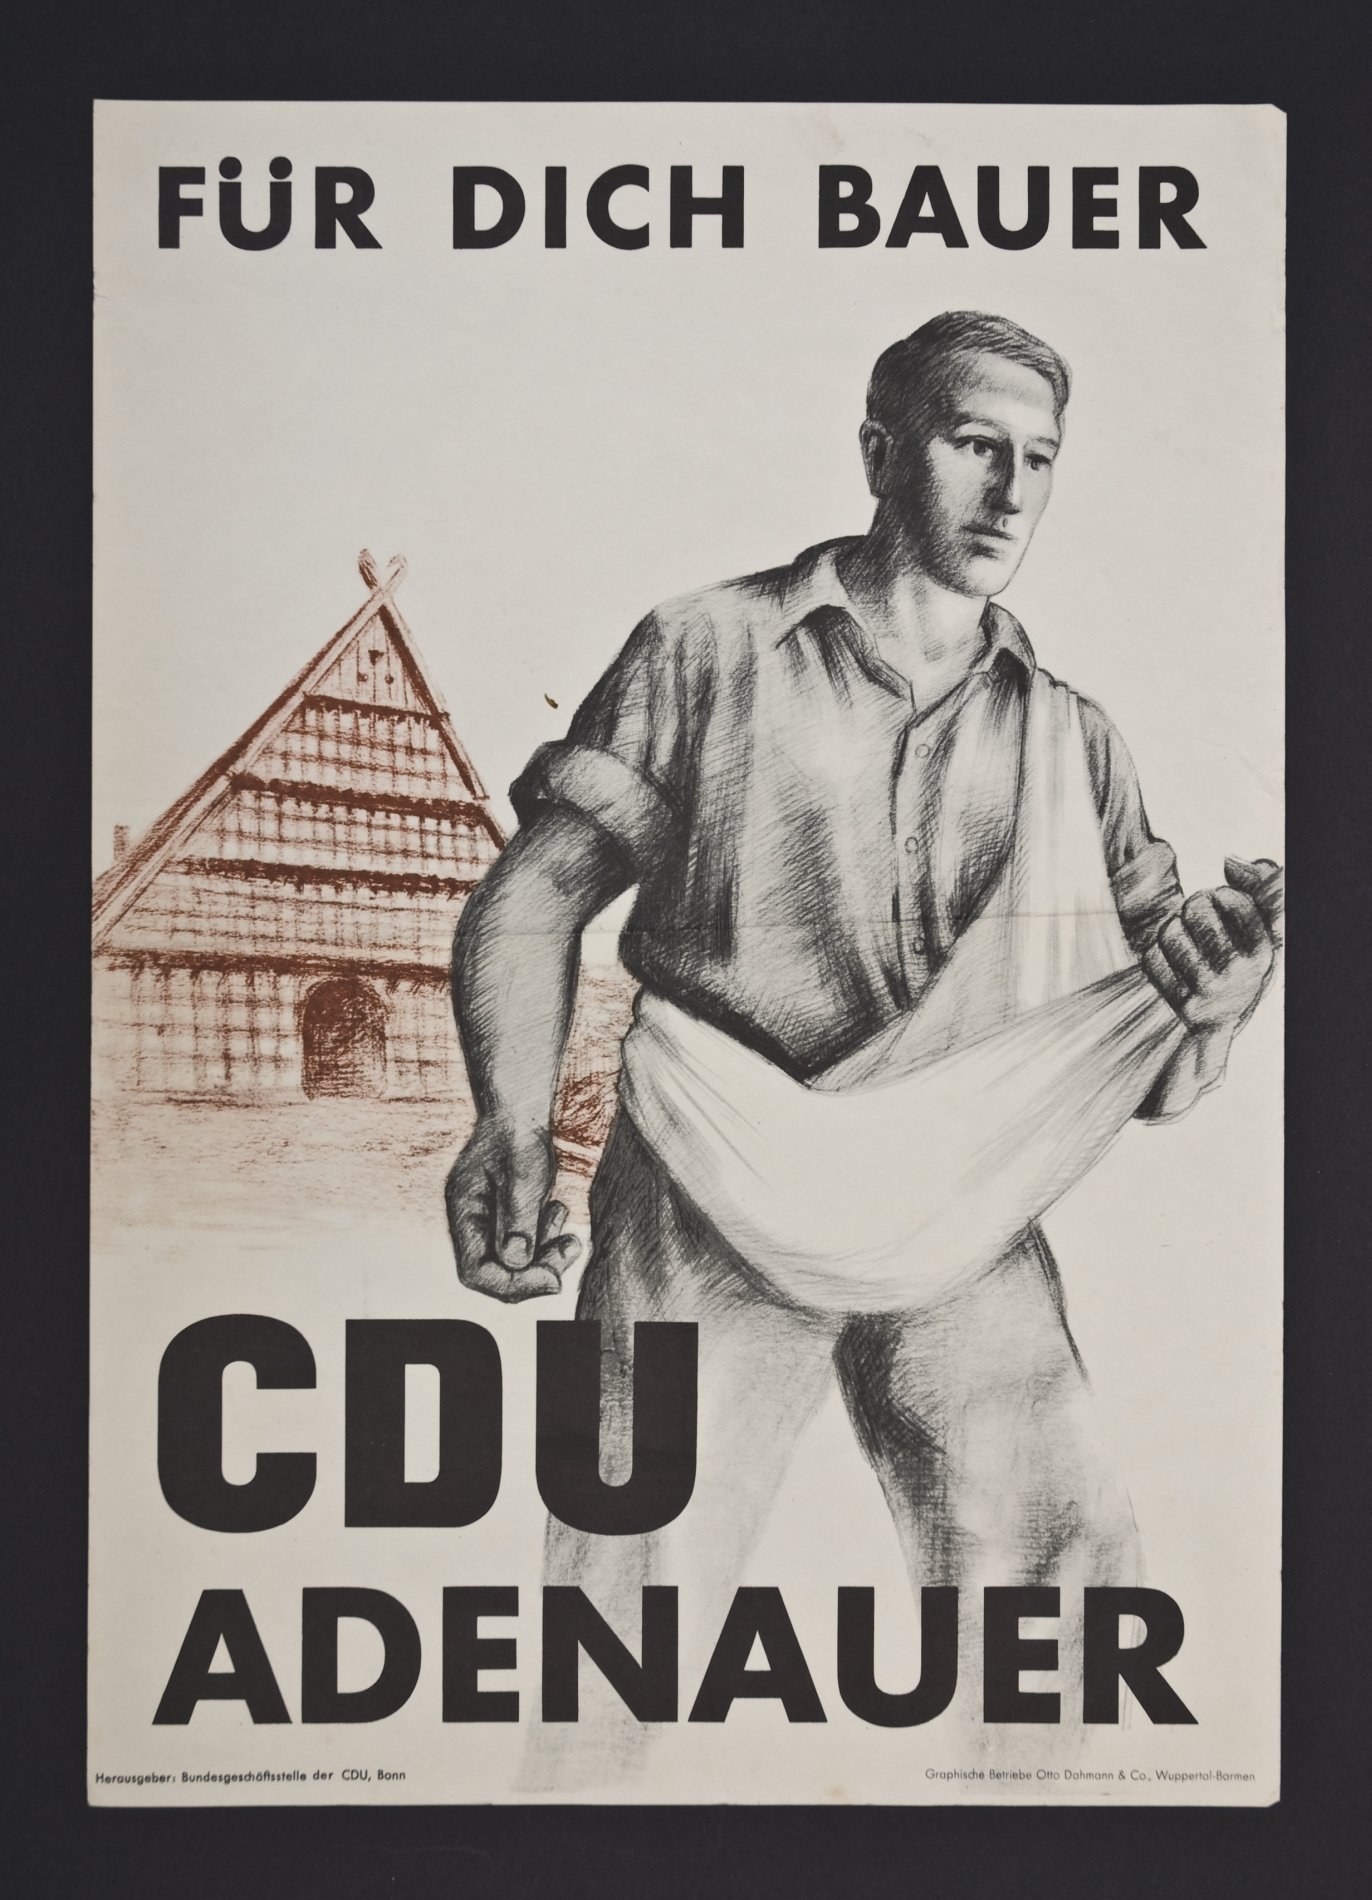 Wahlplakat von 1953 "FÜR DICH BAUER - CDU ADENAUER" (Stiftung Domäne Dahlem - Landgut und Museum, Weiternutzung nur mit Genehmigung des Museums CC BY-NC-SA)